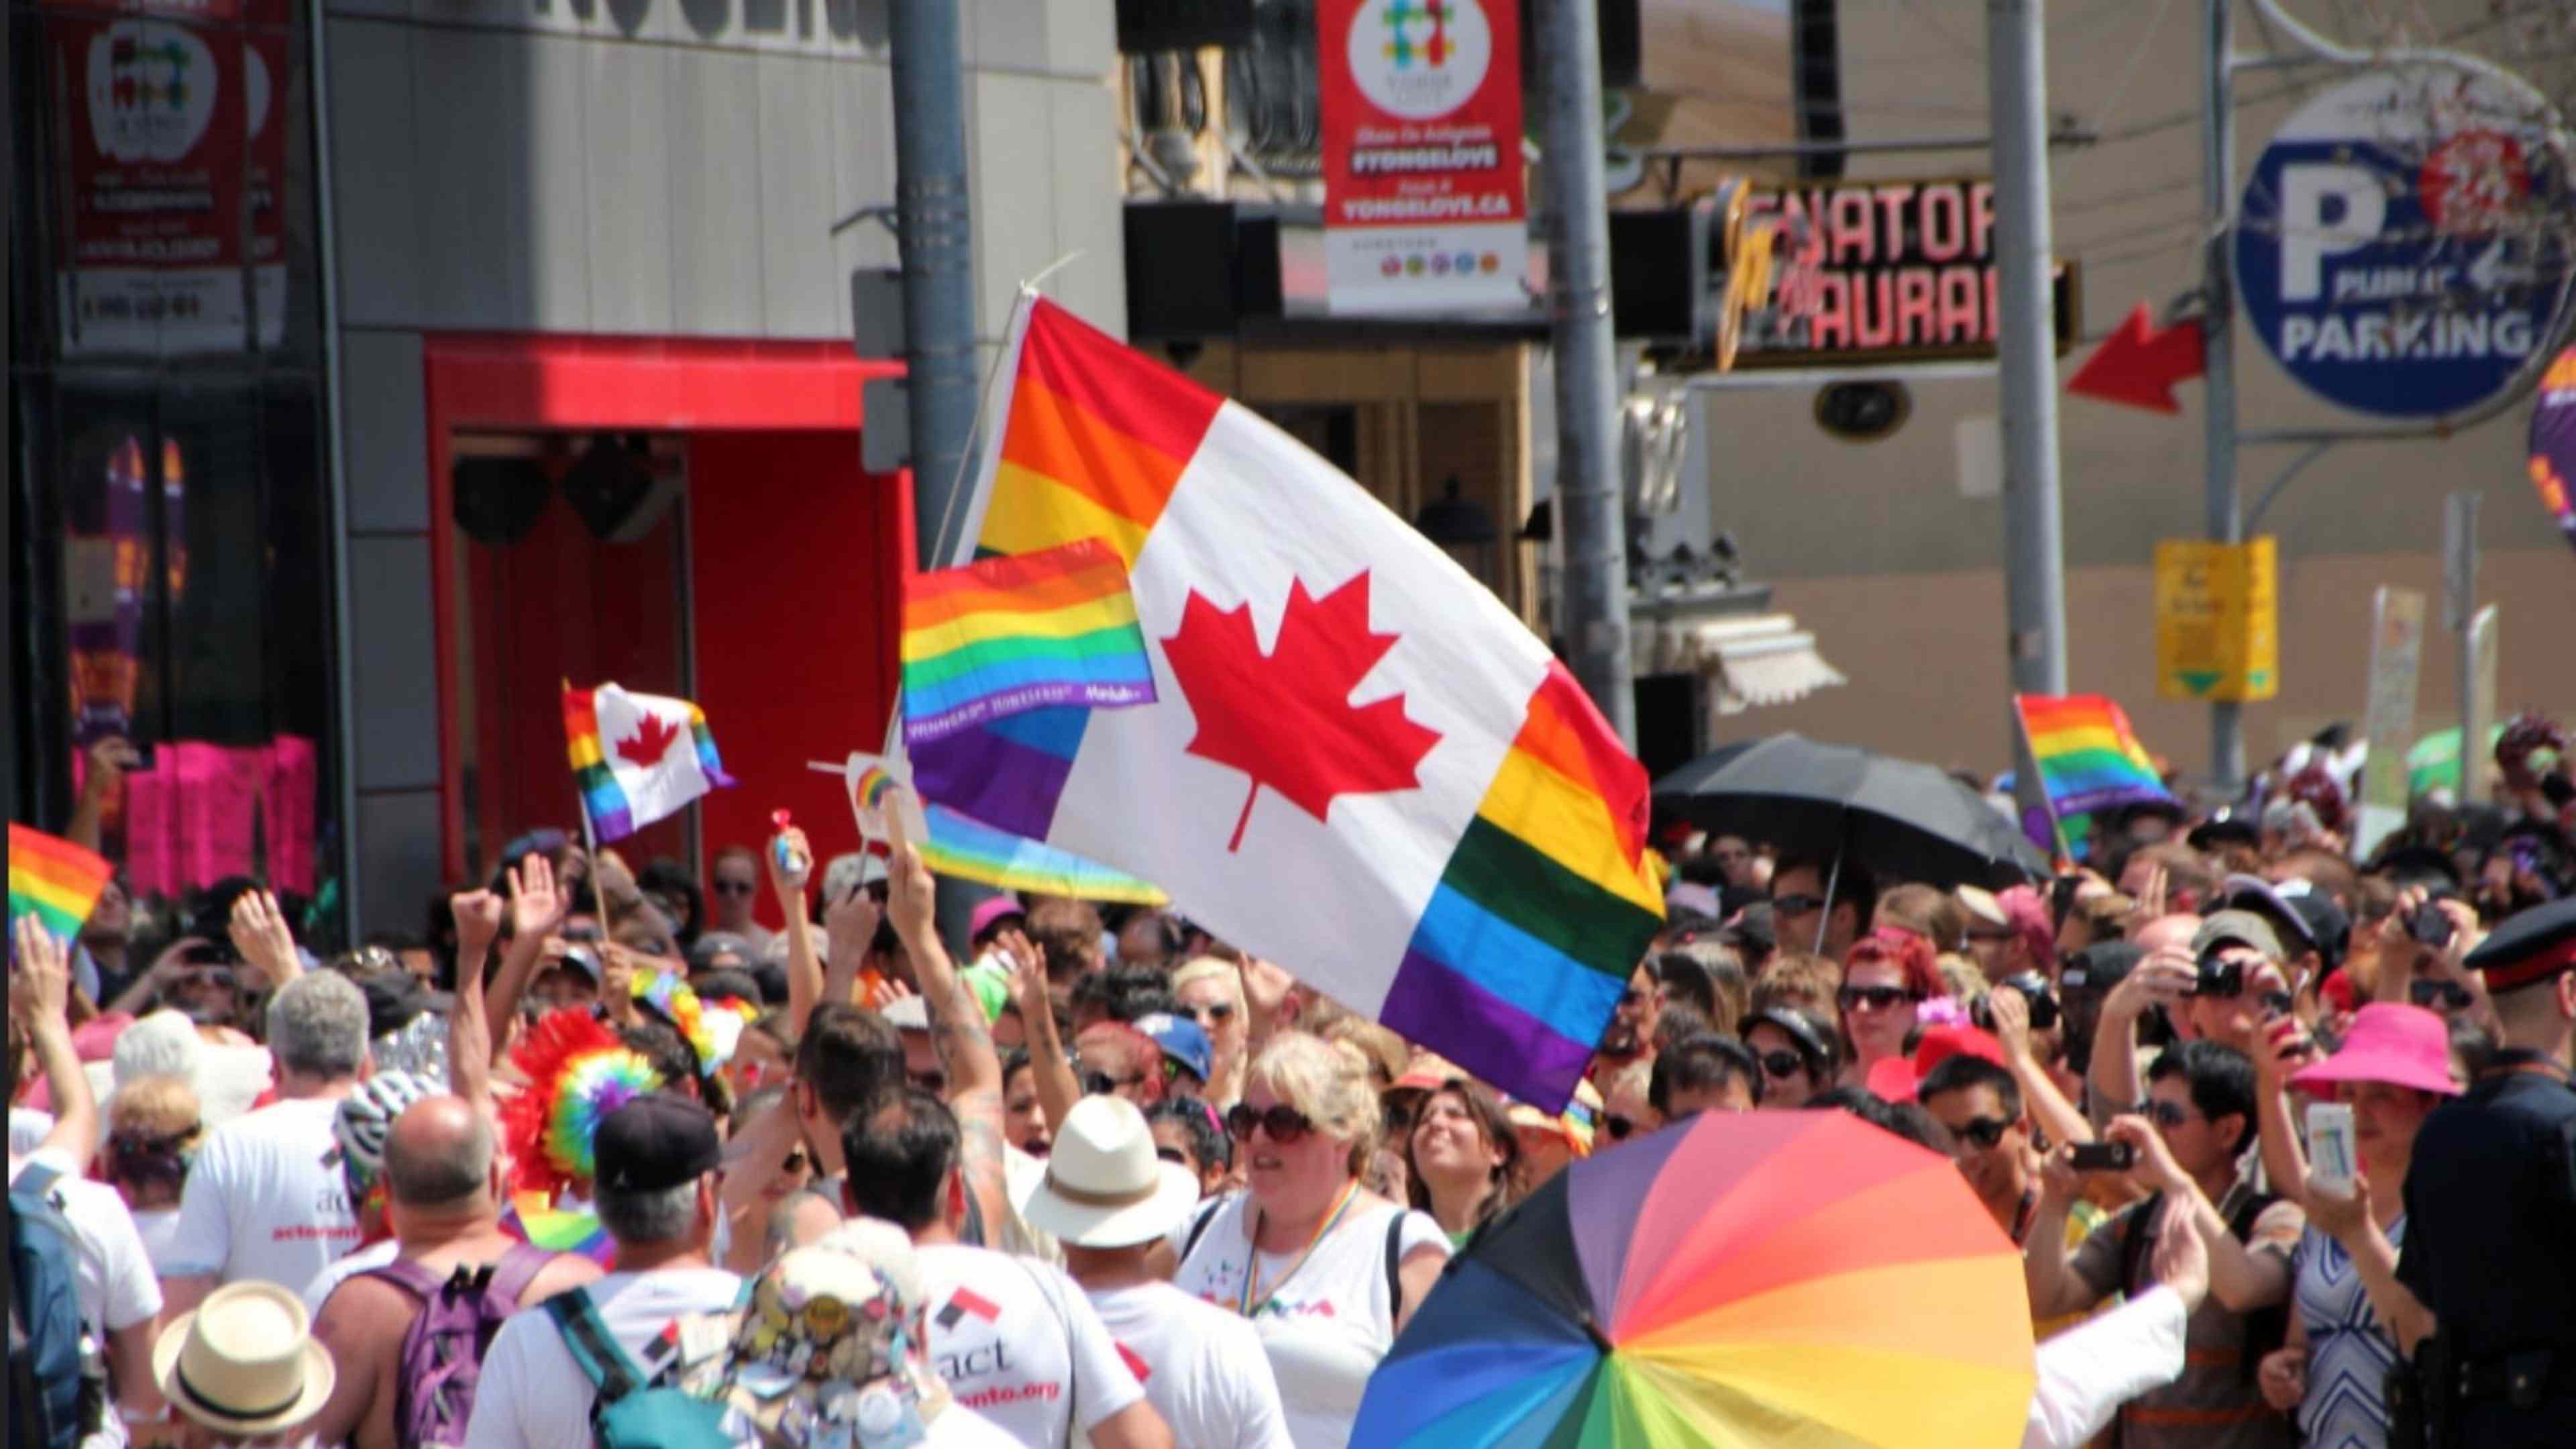 /2021/10/CANADA-WOKE-LGBTQ